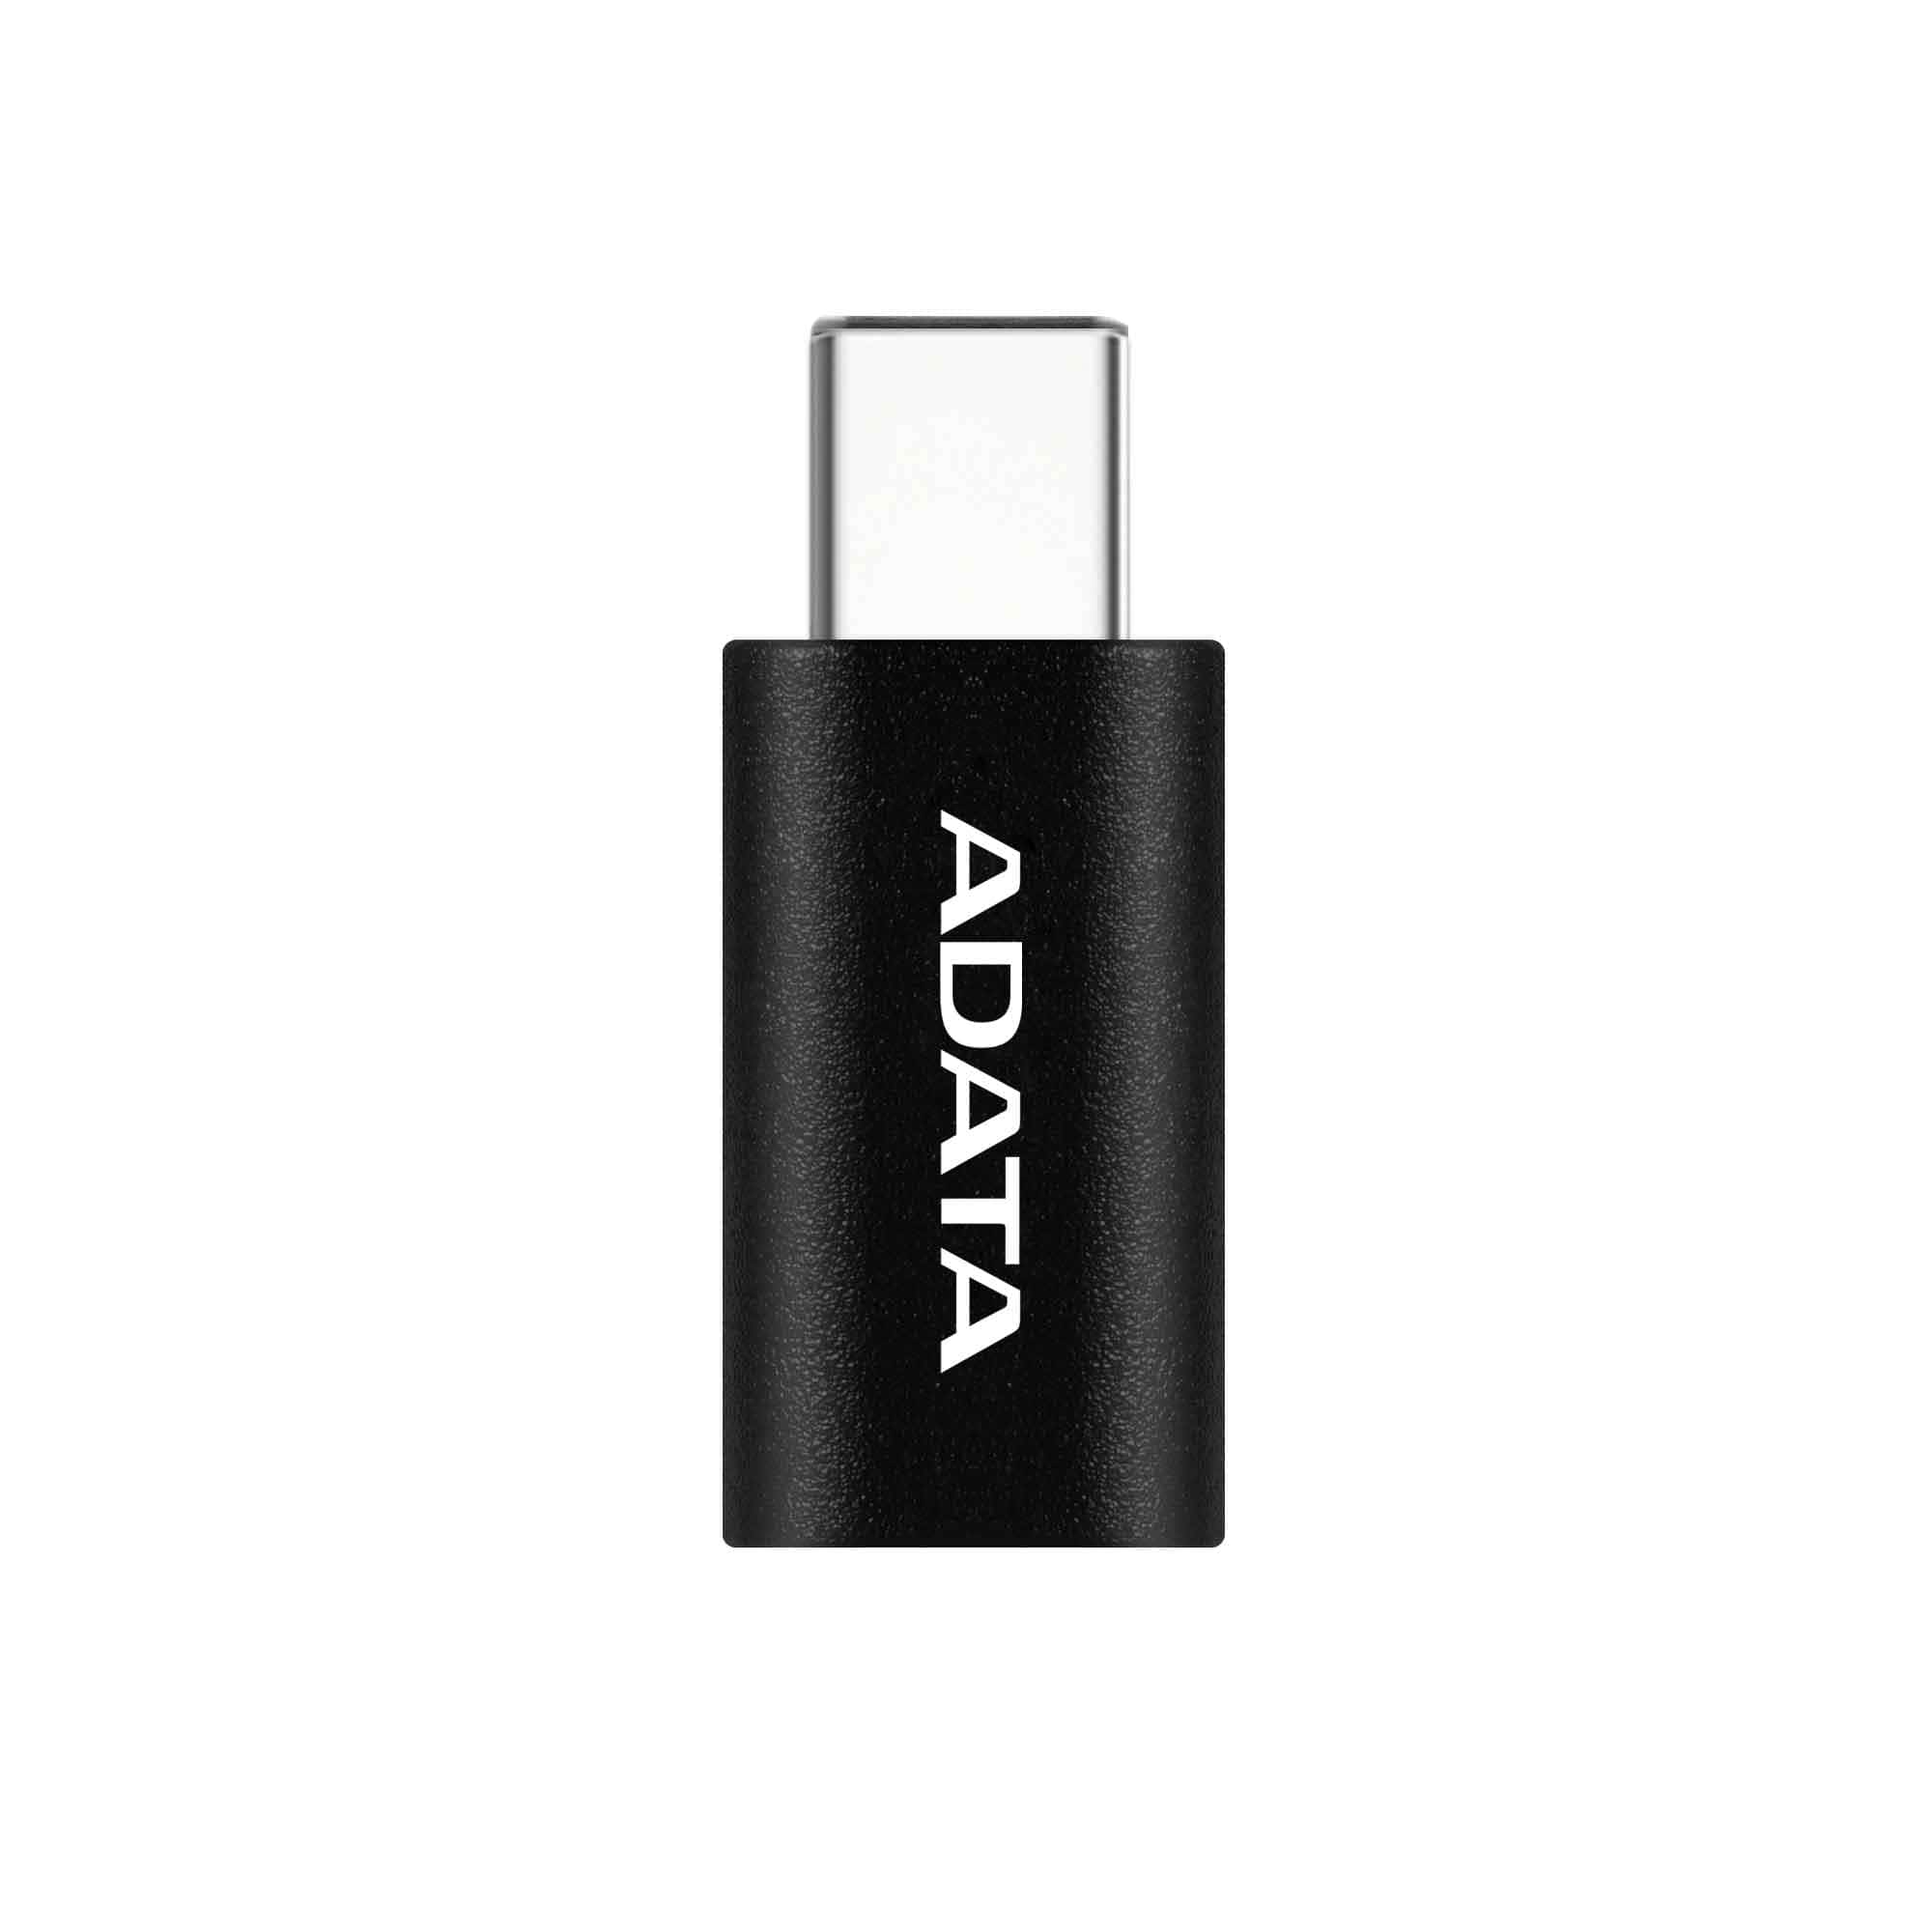 Переходник micro USB-USB Type-C, ADATA, материал пластик, черный (ACM2ADPPL-RBK)